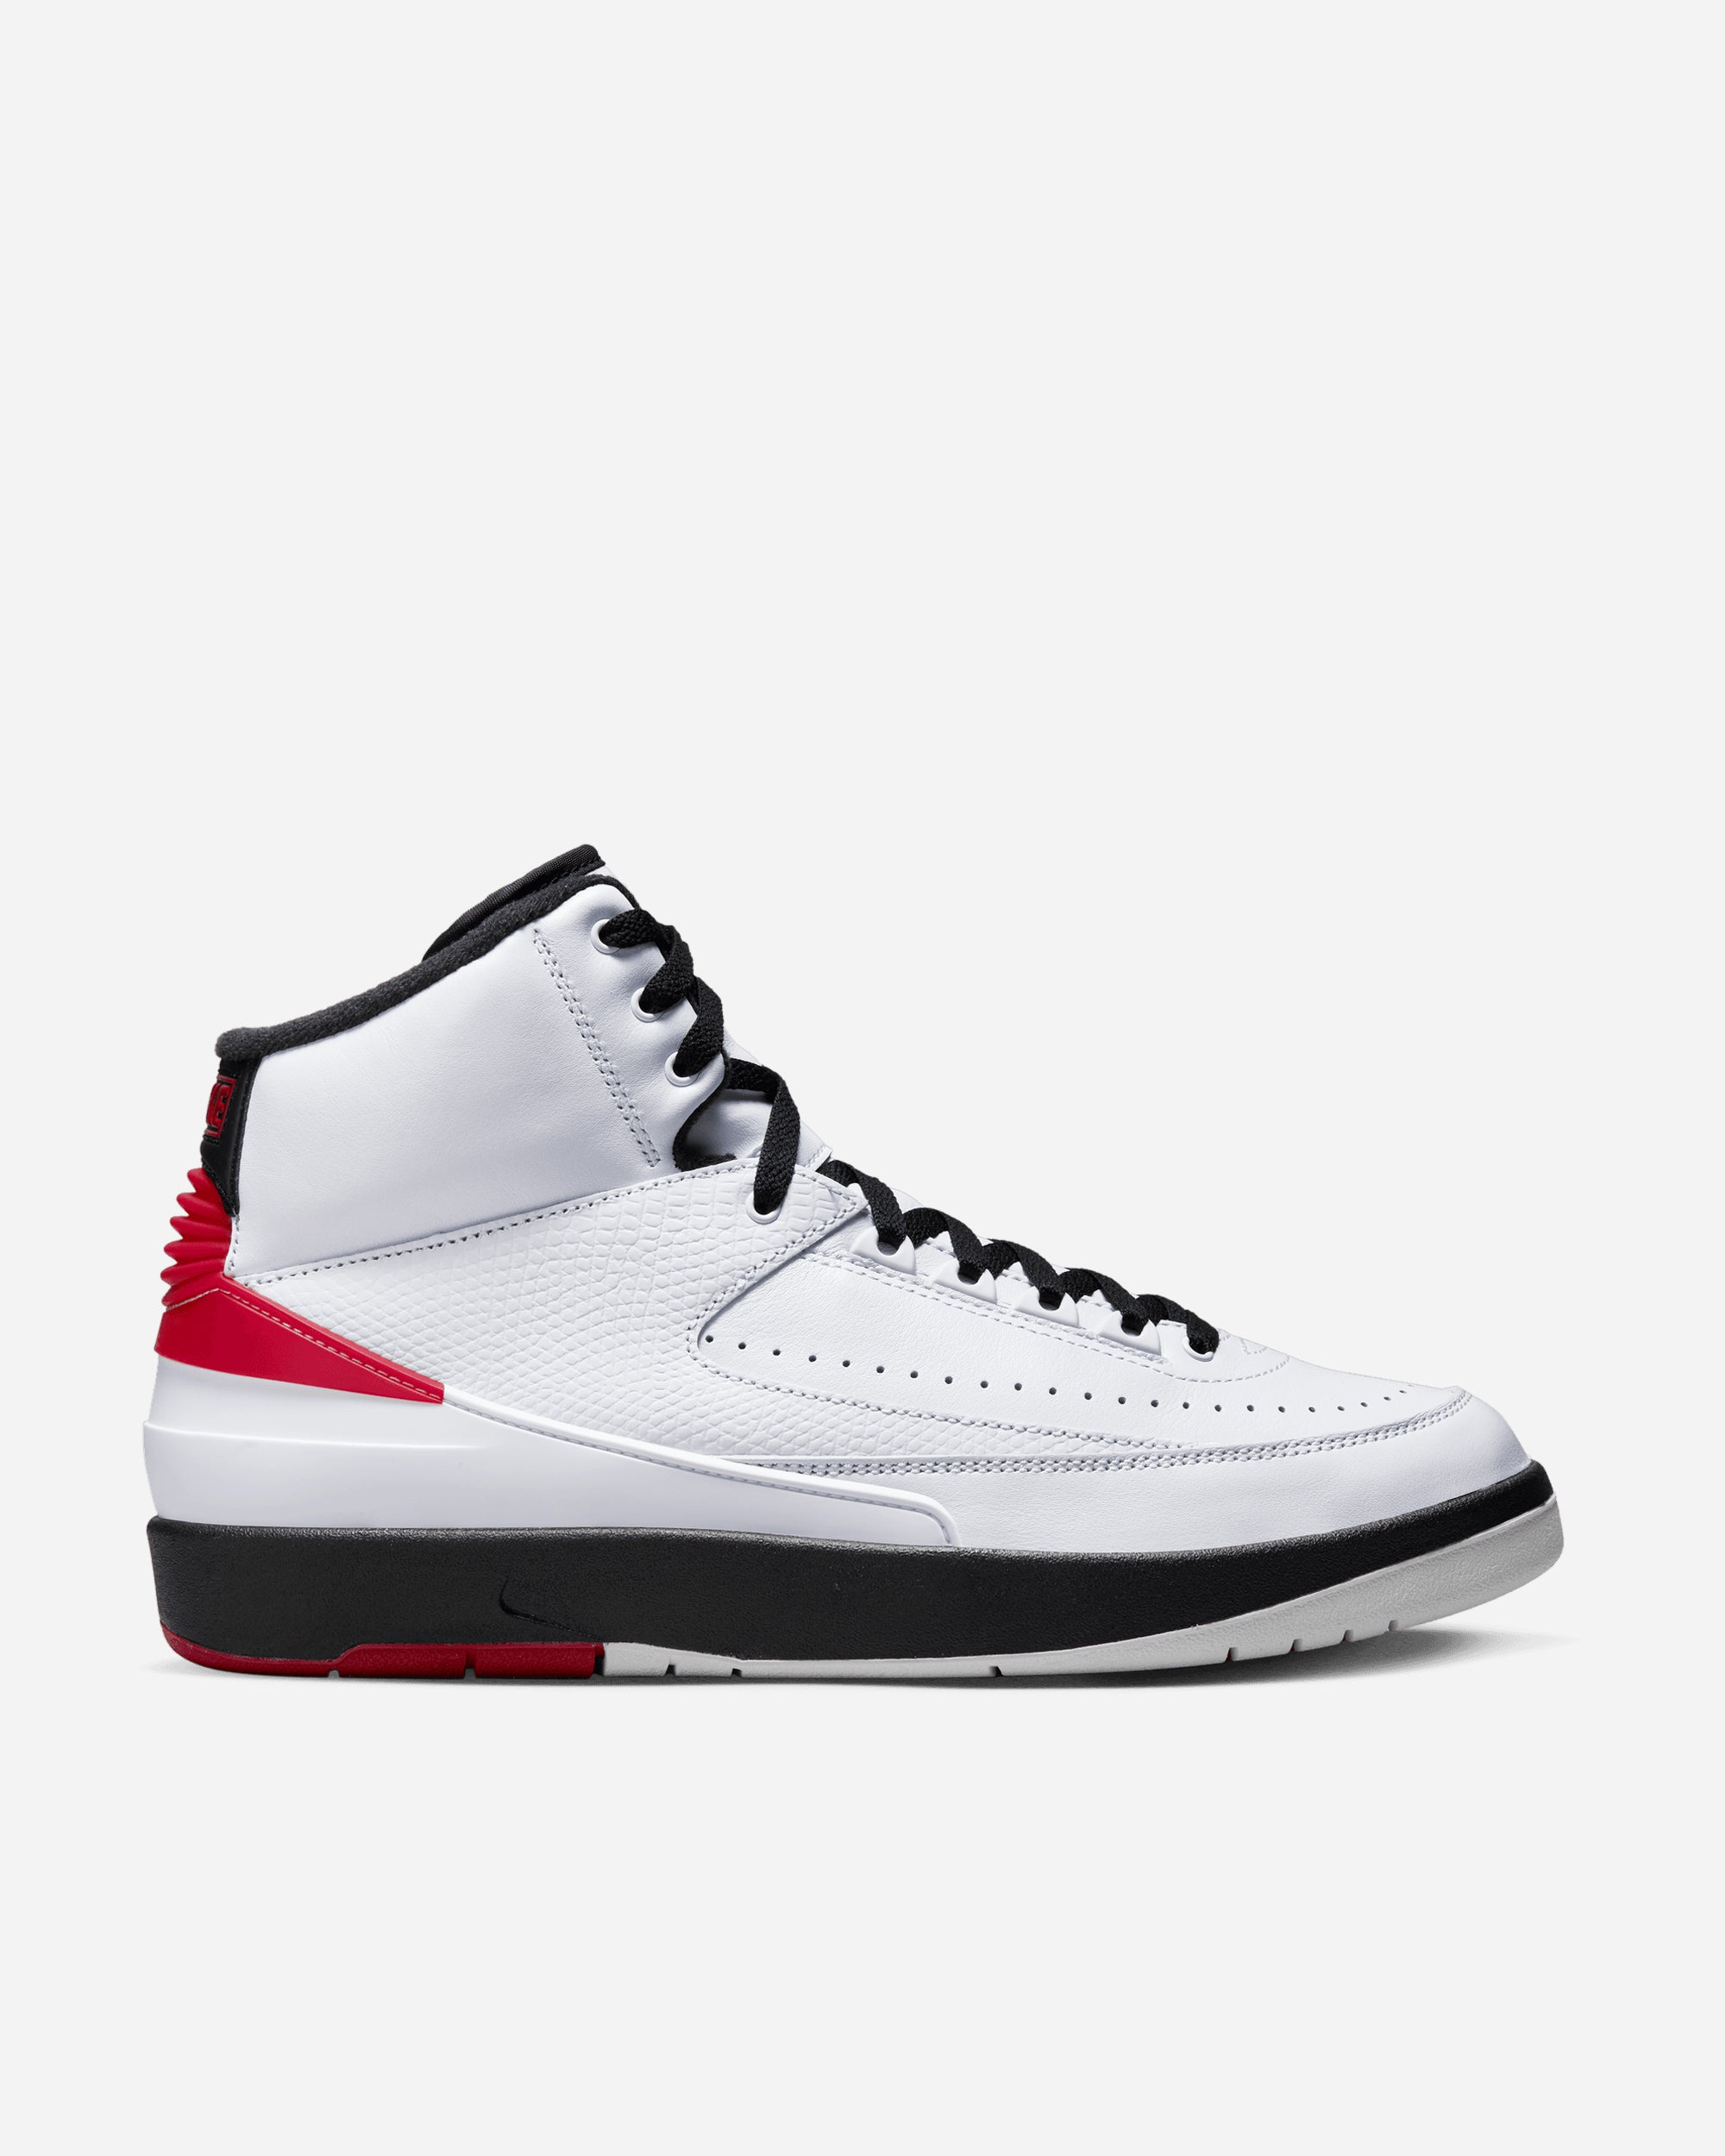 Jordan Brand Air Jordan 2 Retro 'Chicago' WHITE/VARSITY RED-BLACK DX2454-106